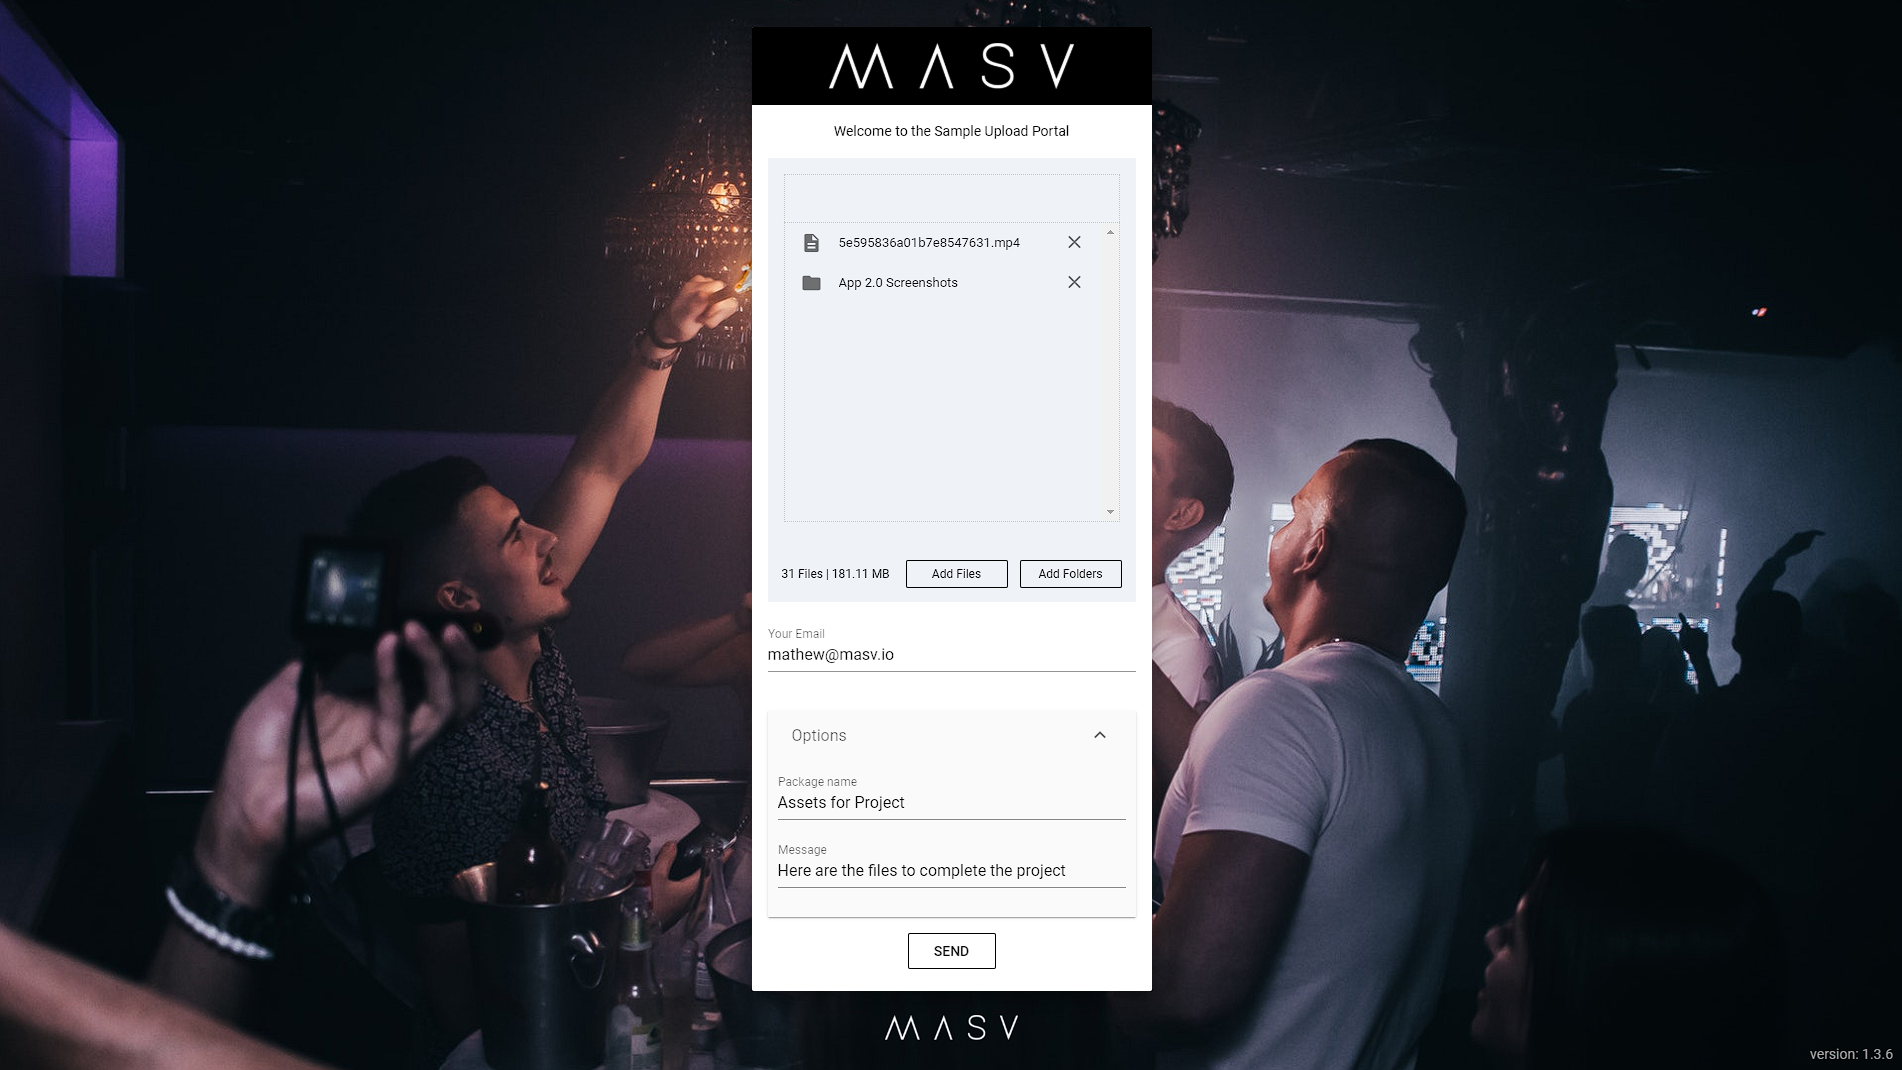 Customer Branded MASV Portal